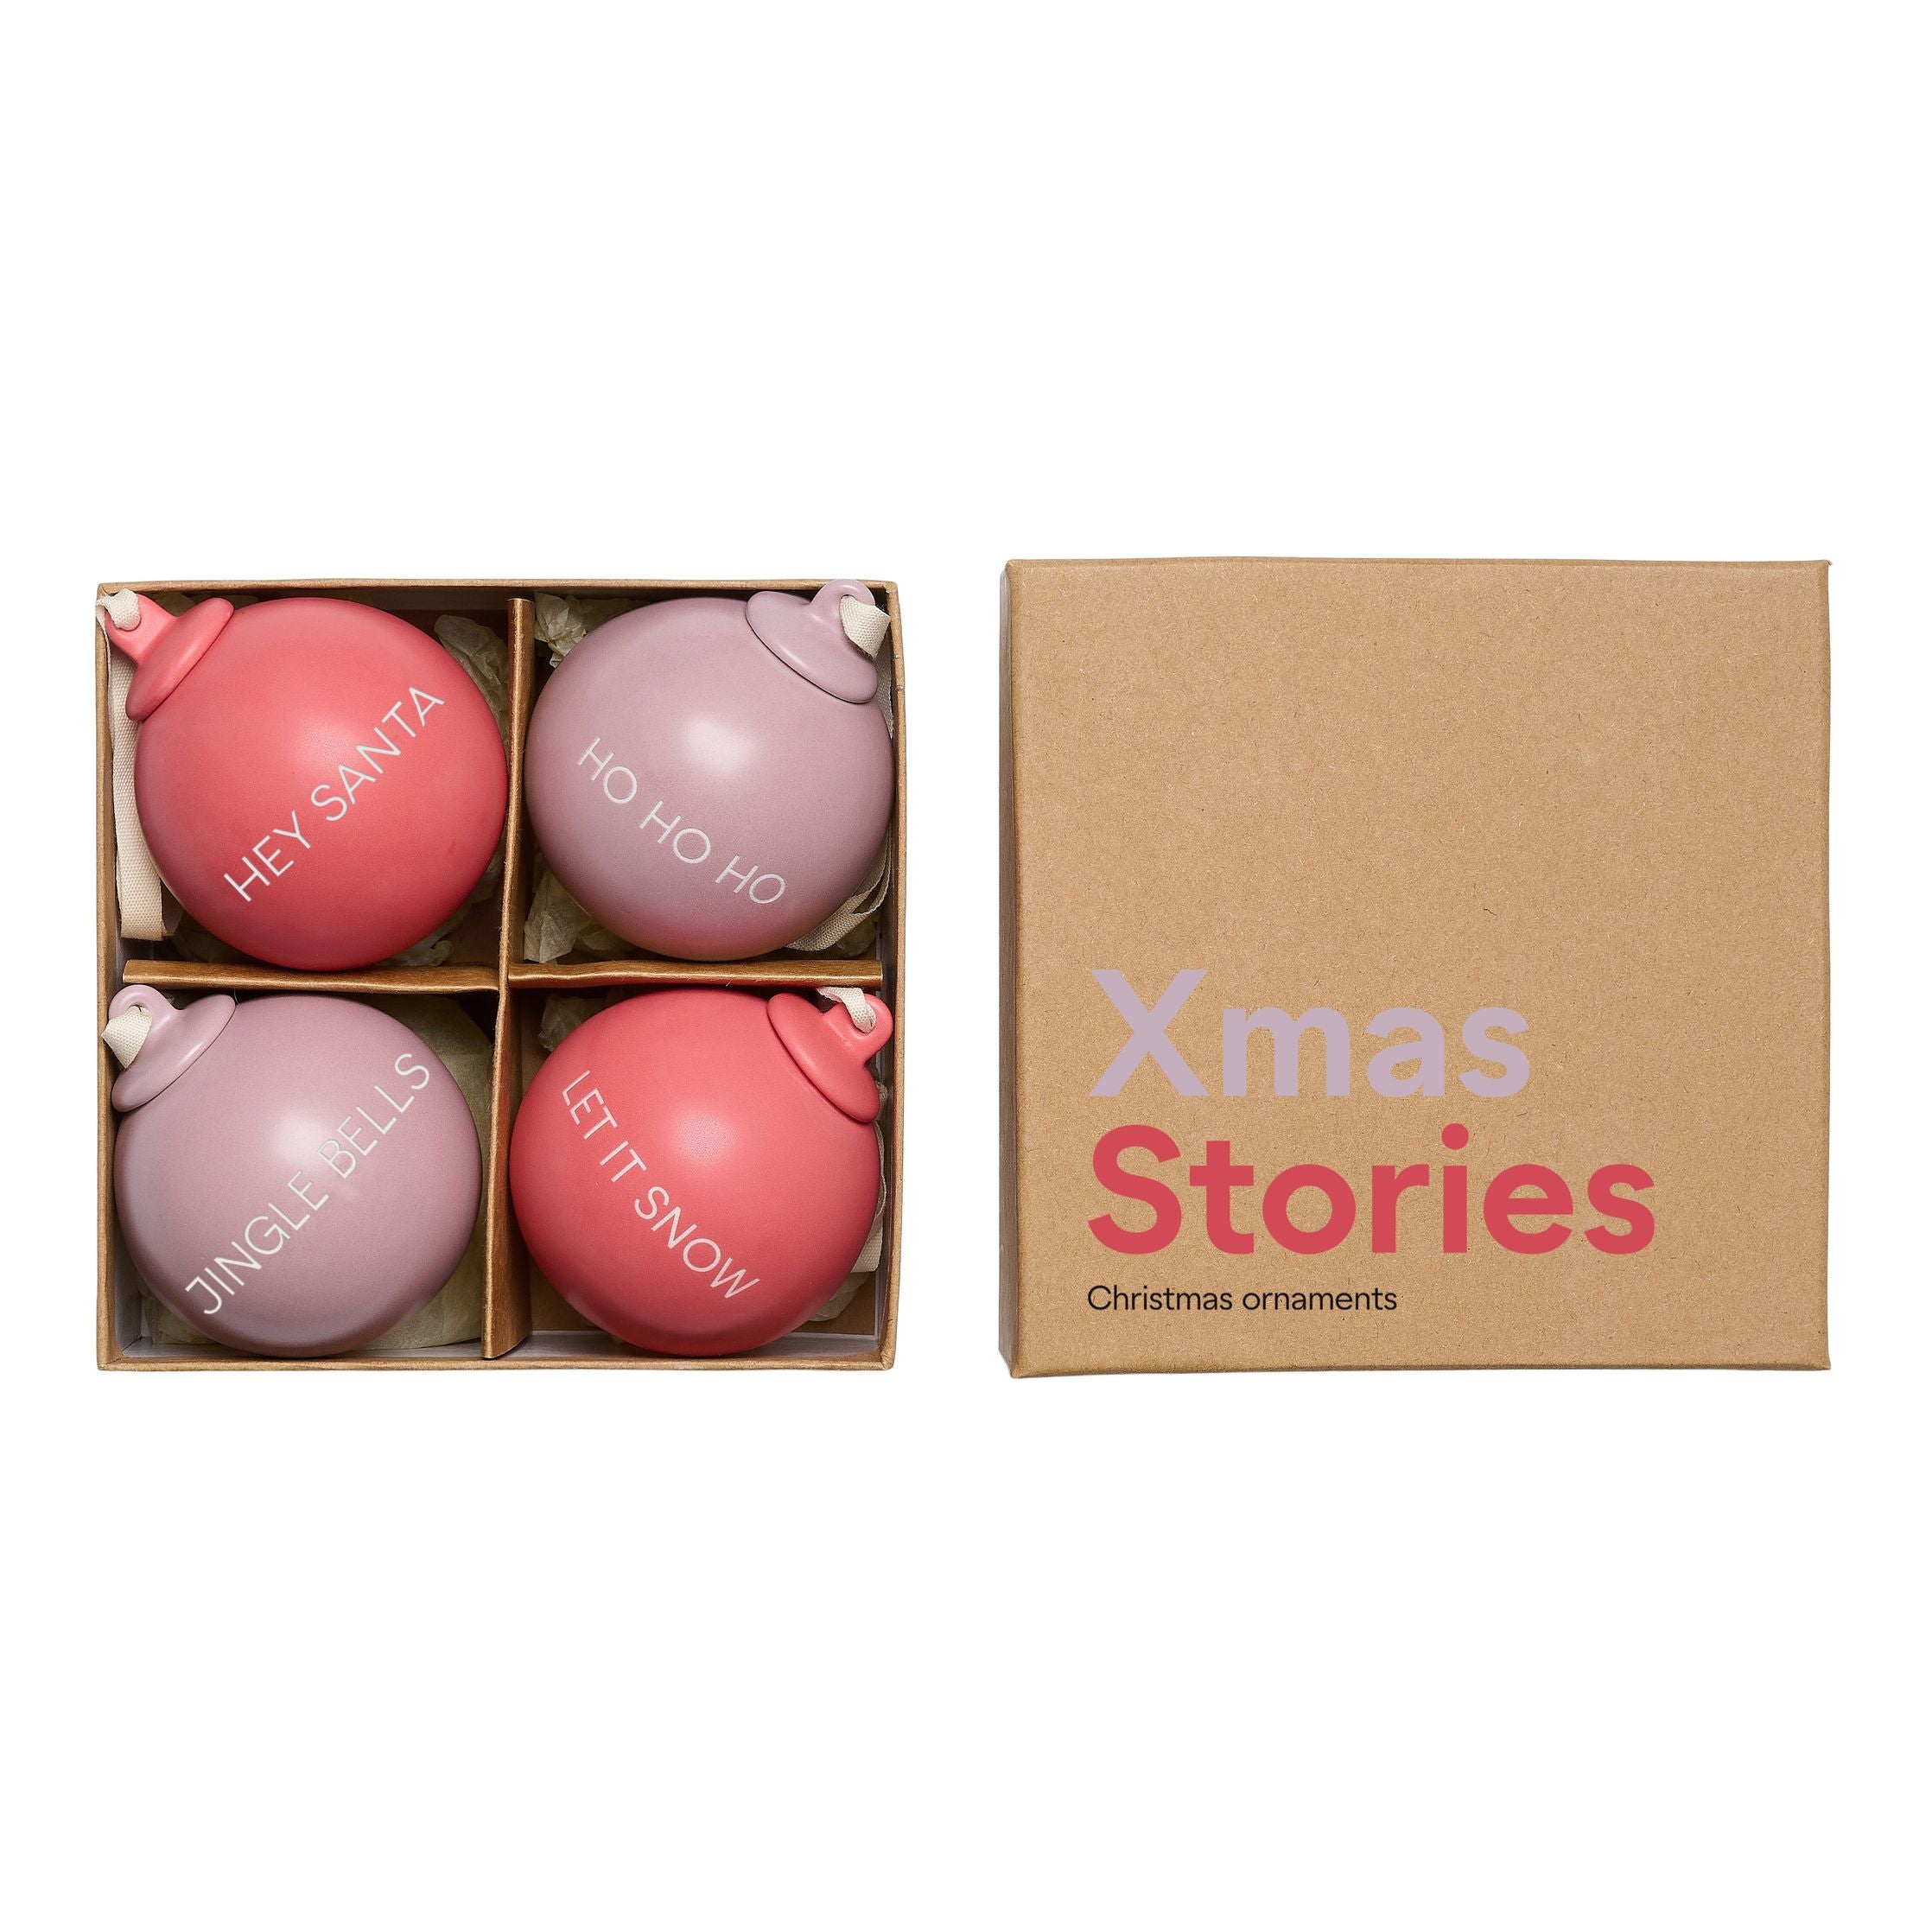 Lettres de conception histoires de Noël pendentifs balles 60 mm (ensemble de 4 pcs), lavande / rose fanée